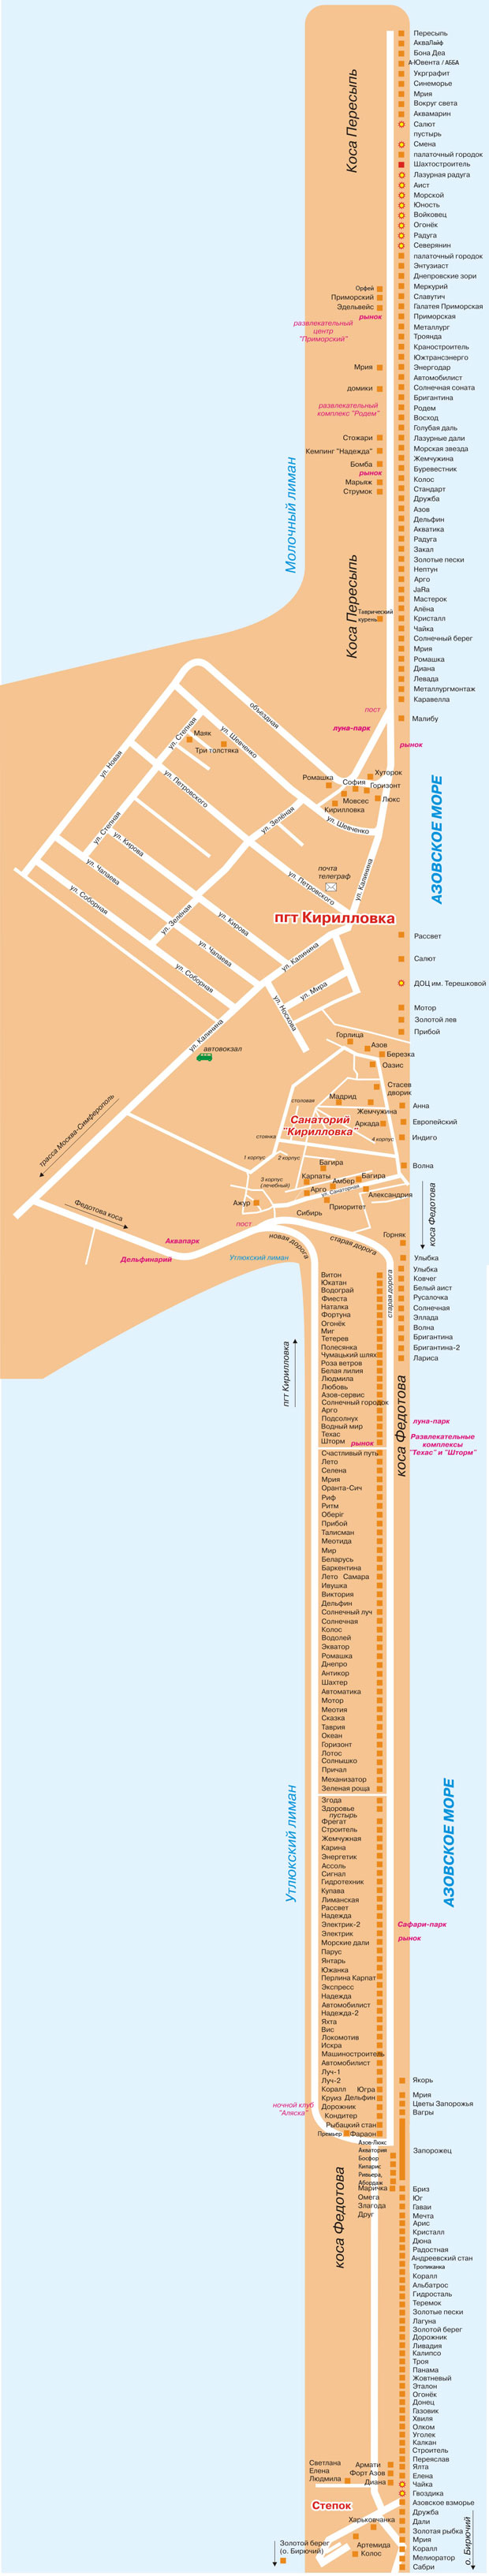 Карта баз отдыха Кирилловки